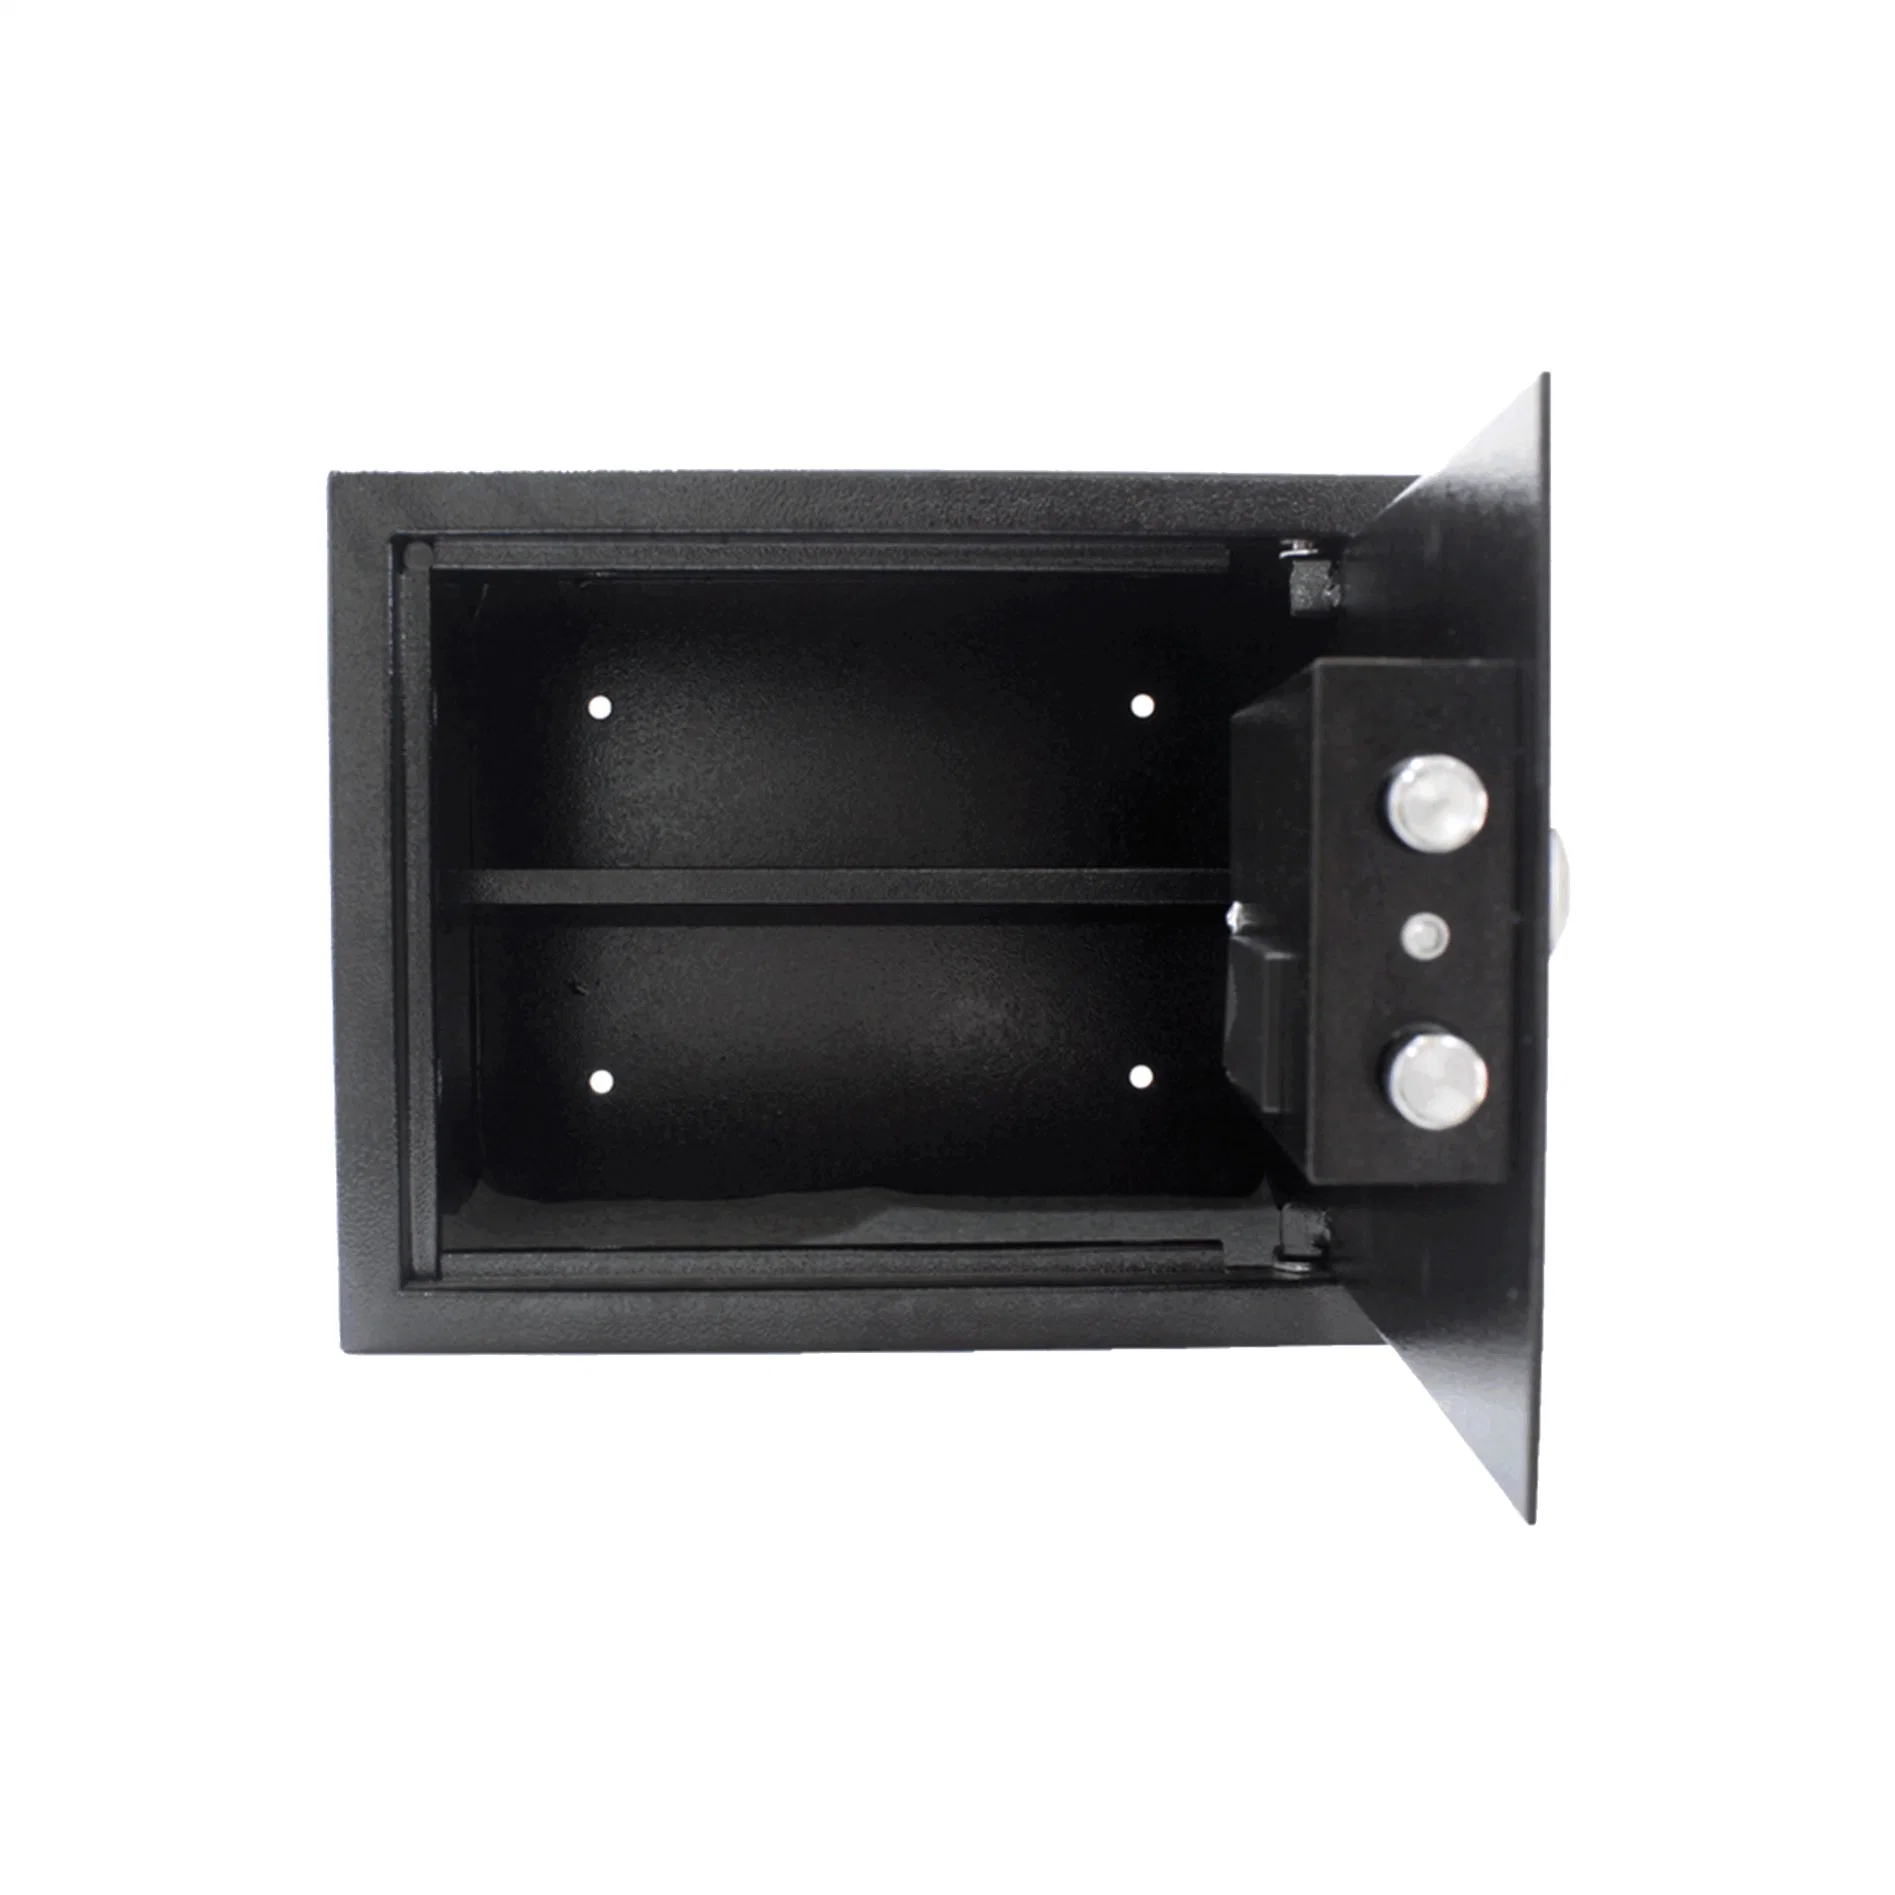 Electronic Safe Locker Front for Altamira Digital Safe Iron Safe Locker Manufacturer in China (USE-250LCD)